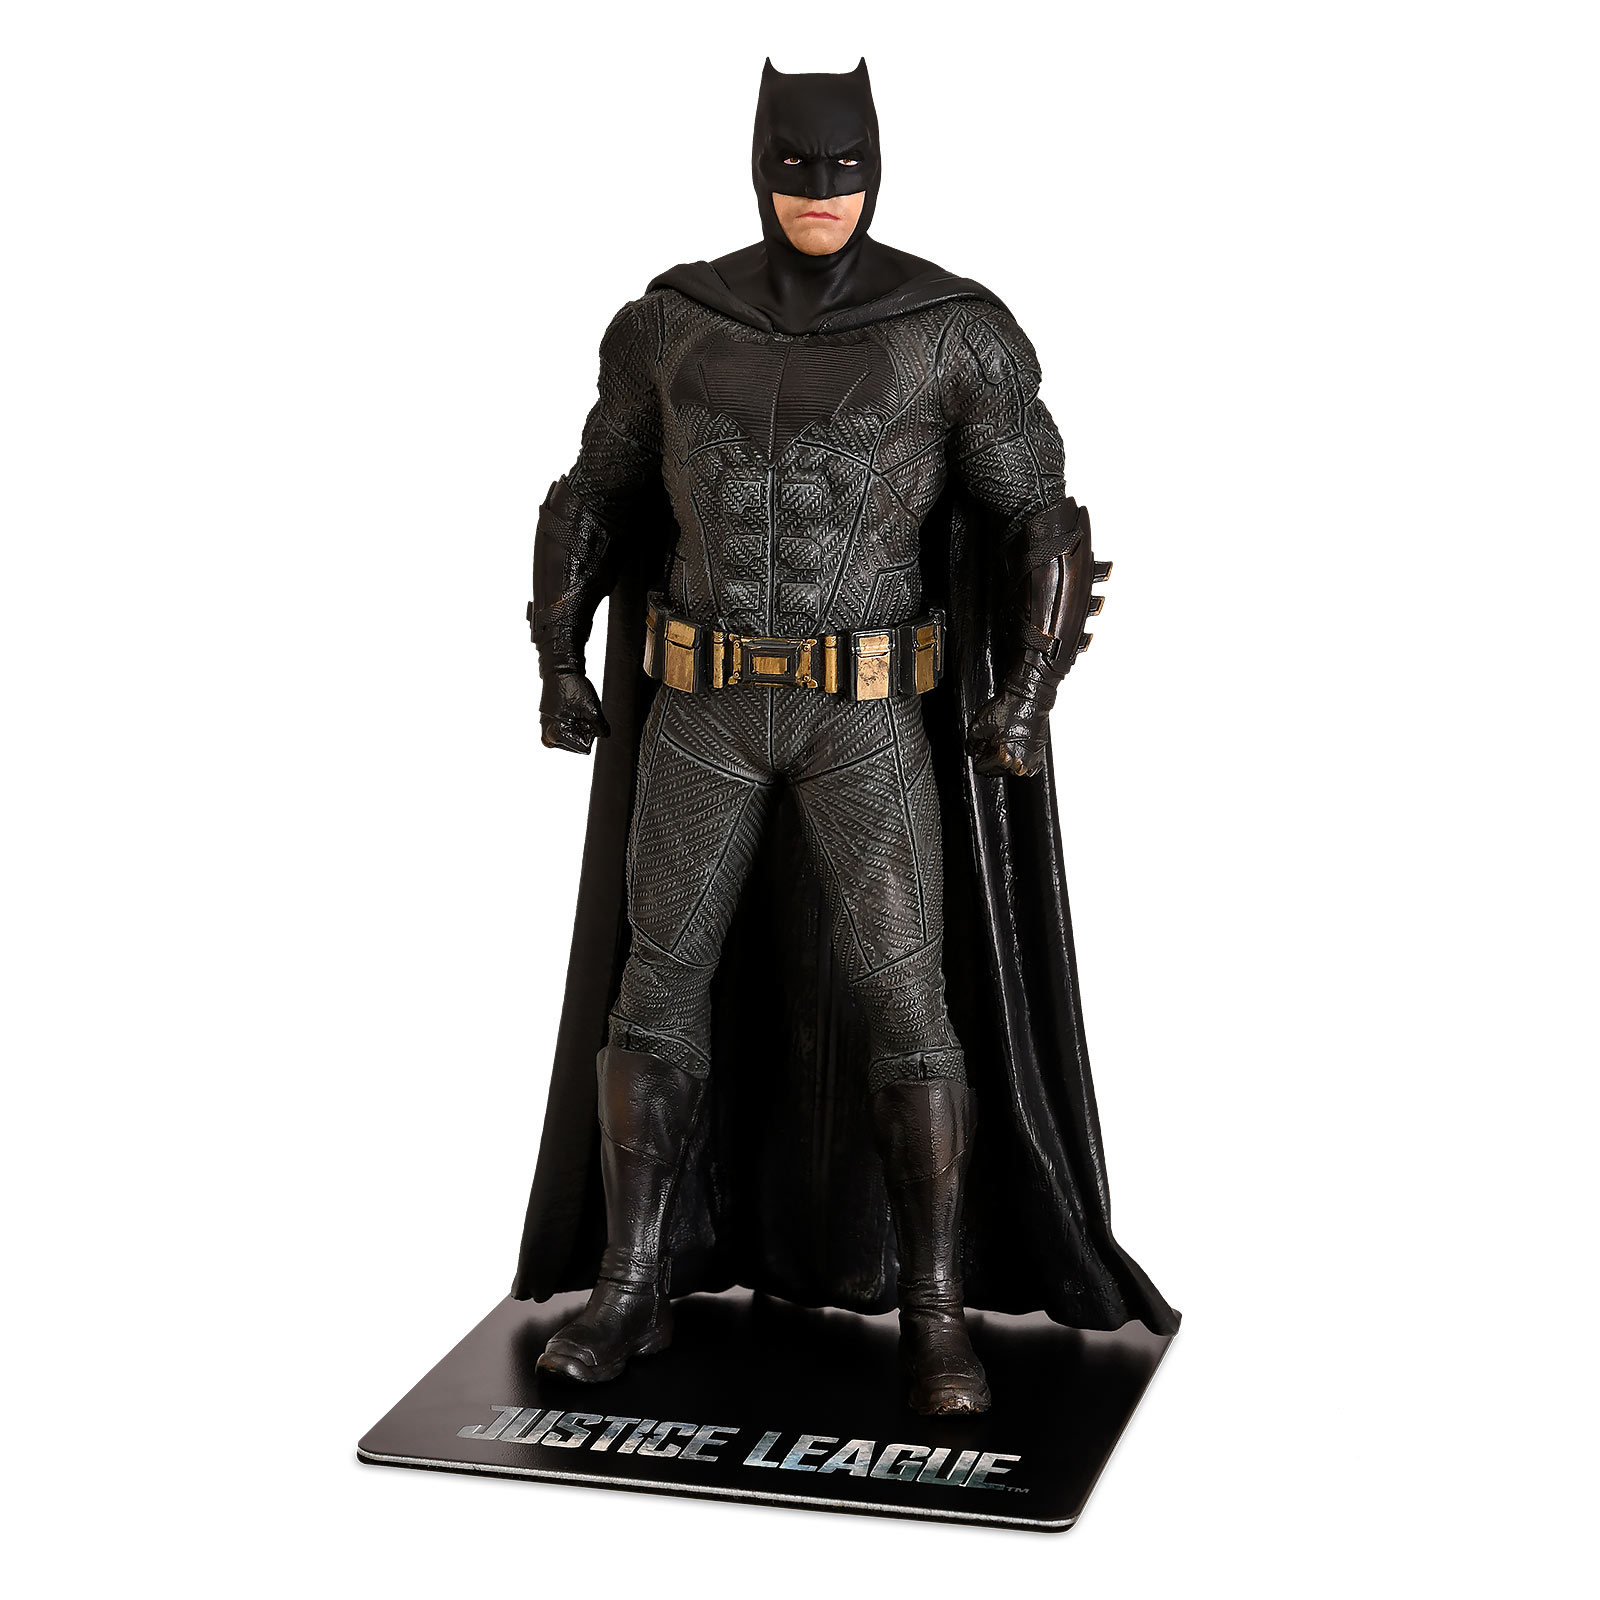 Batman - Justice League ArtFX+ Figurine 19 cm